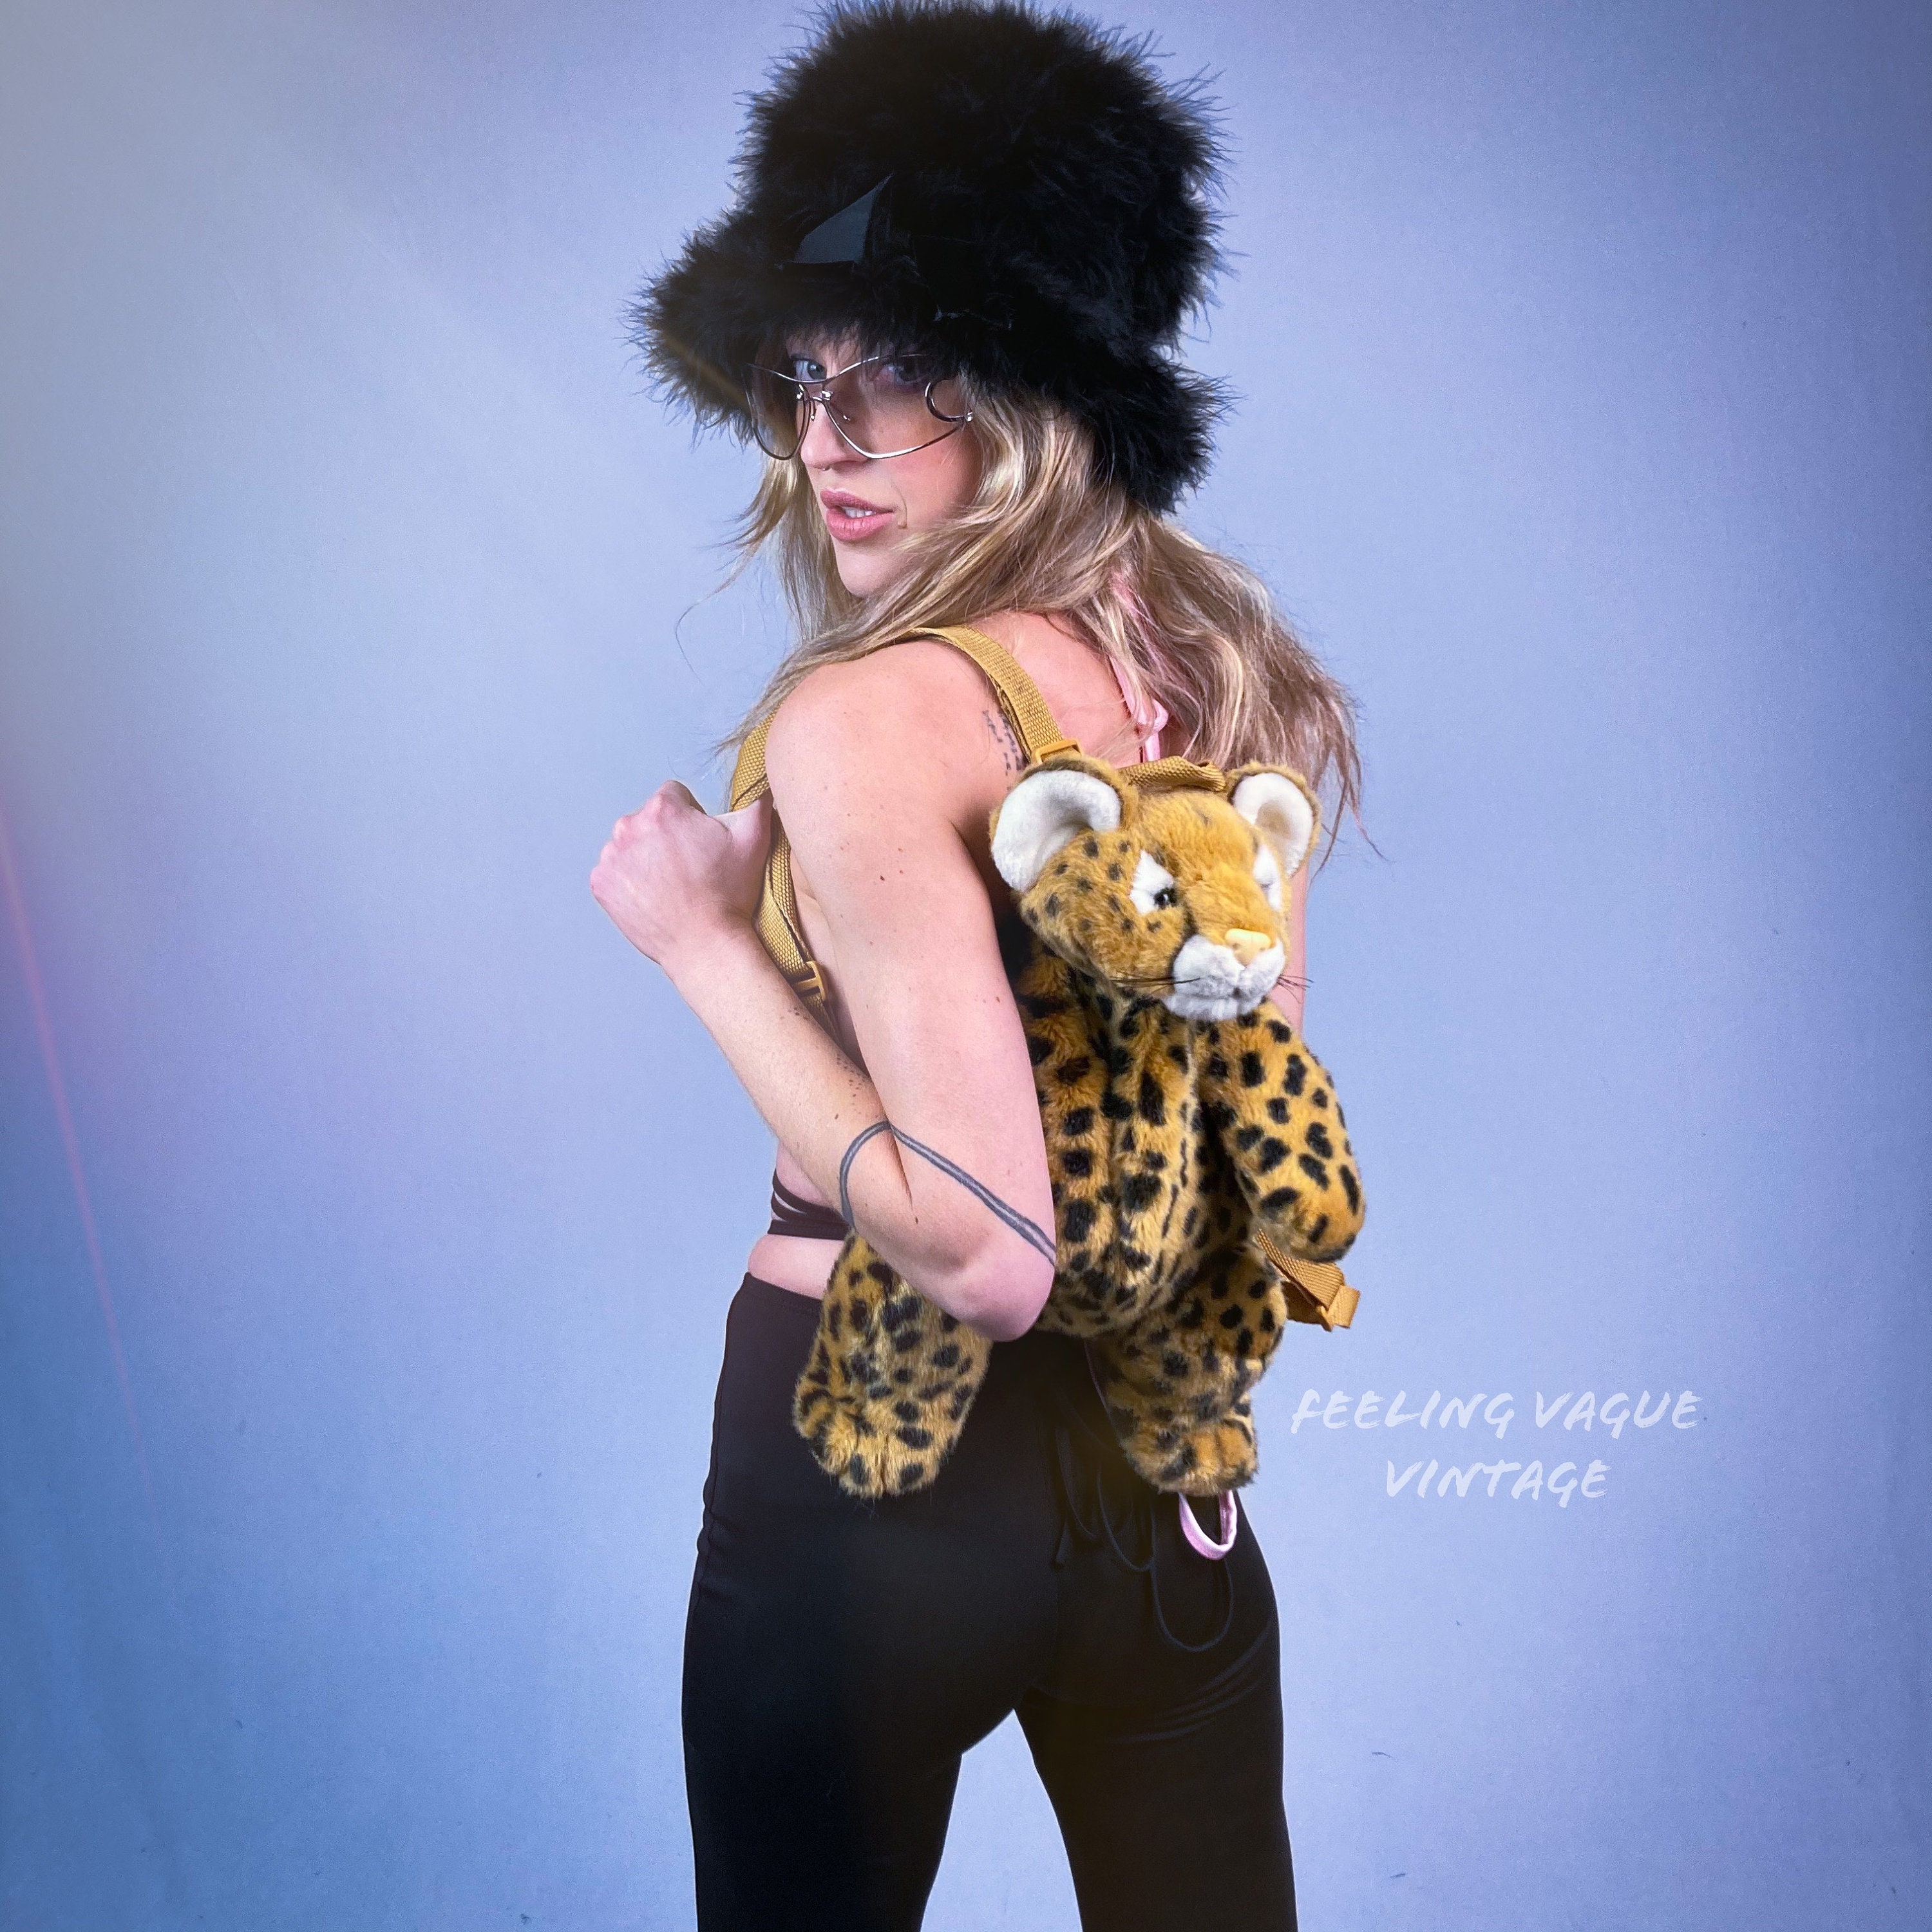 Hazel Upcycled Leopard Backpack – The Vintage Leopard